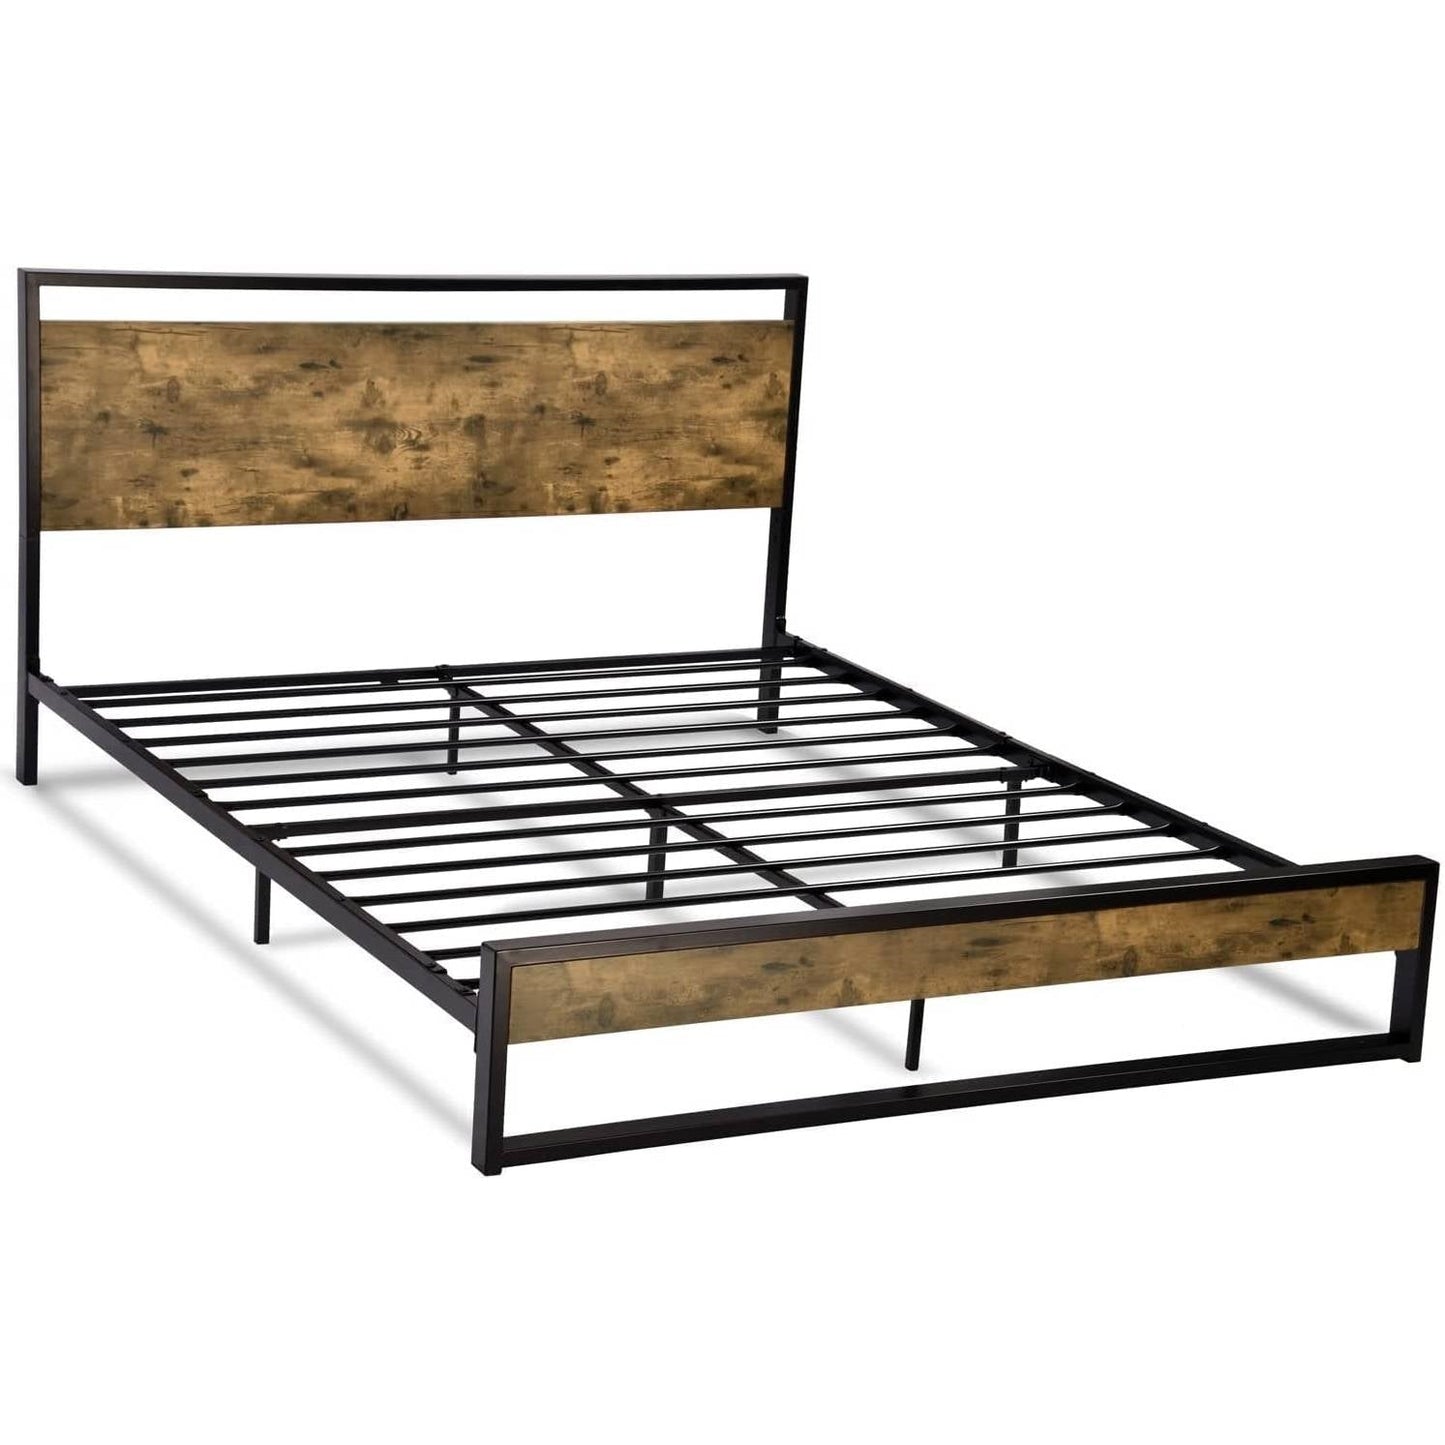 Bedroom > Bed Frames > Platform Beds - Queen Modern Farmhouse Platform Bed Frame With Wood Panel Headboard Footboard